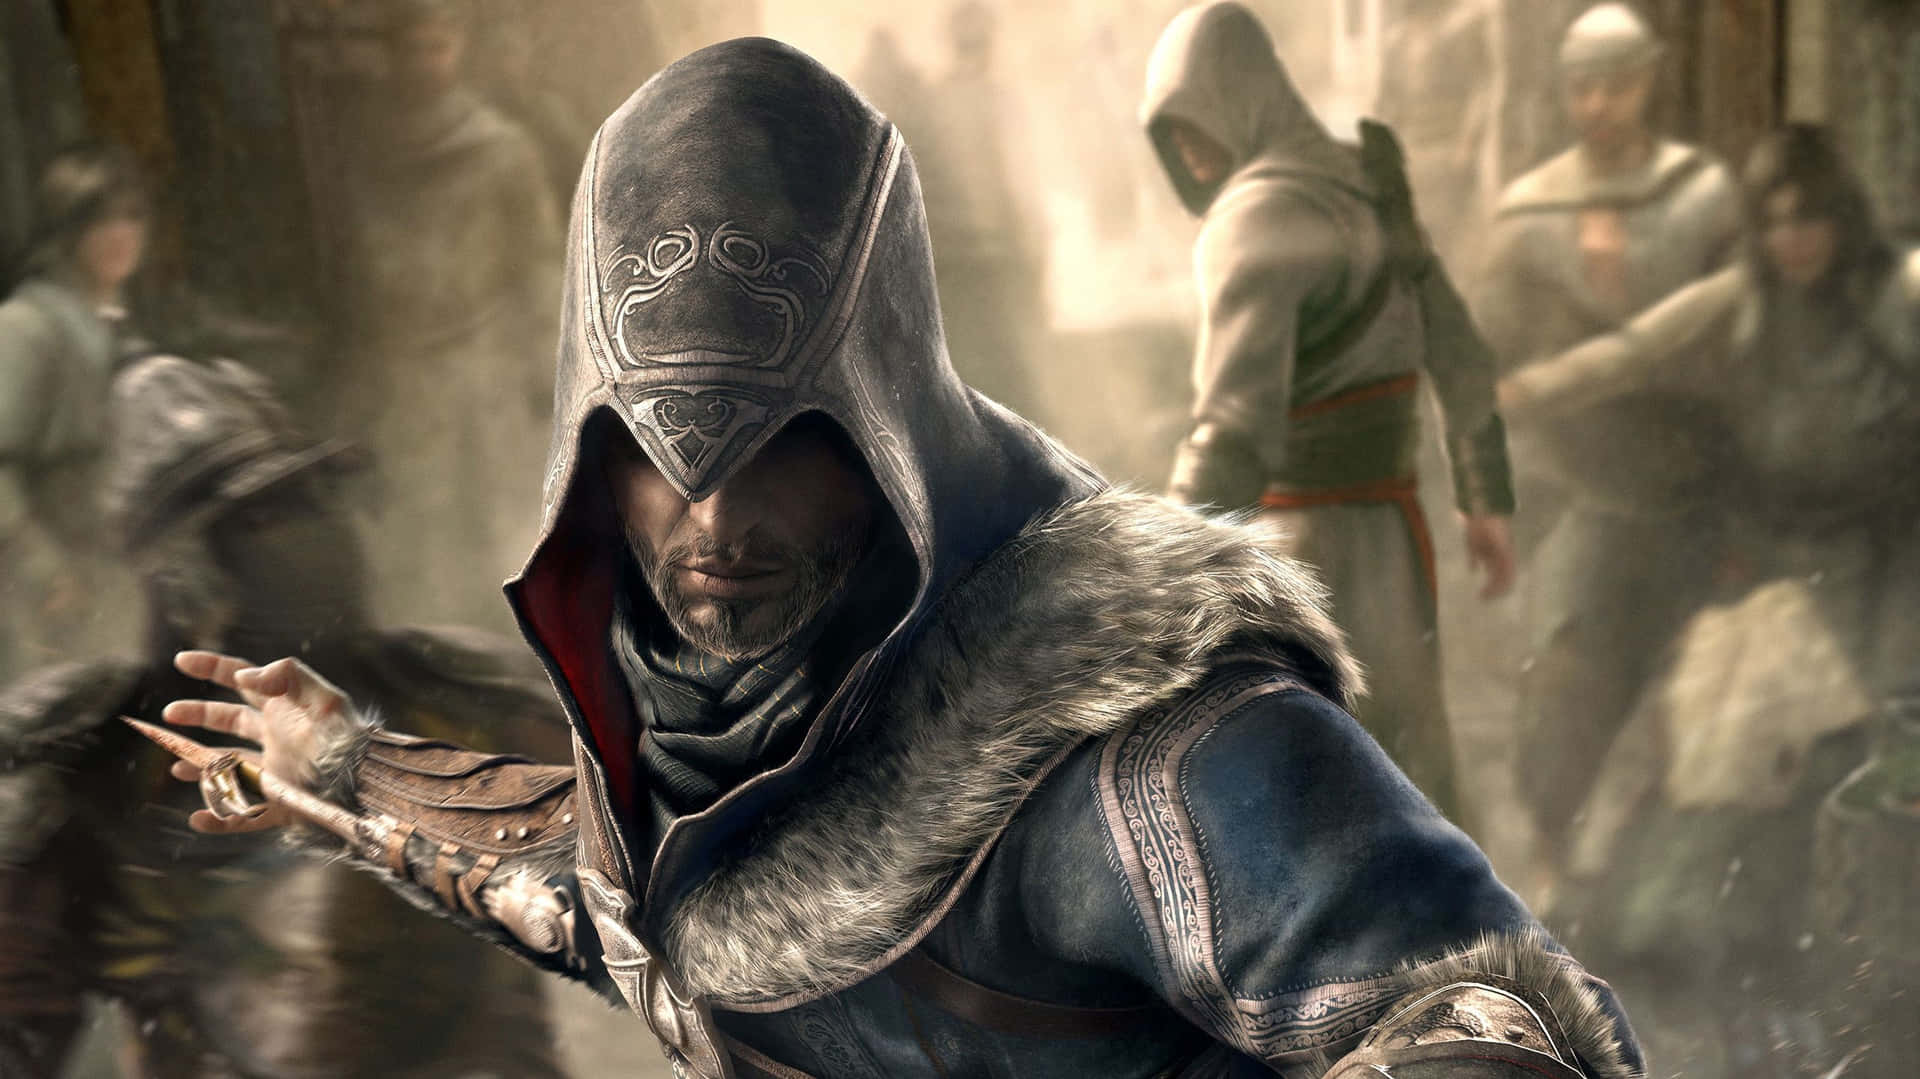 Assassin's Creed Revelations - Master Assassin in Action Wallpaper